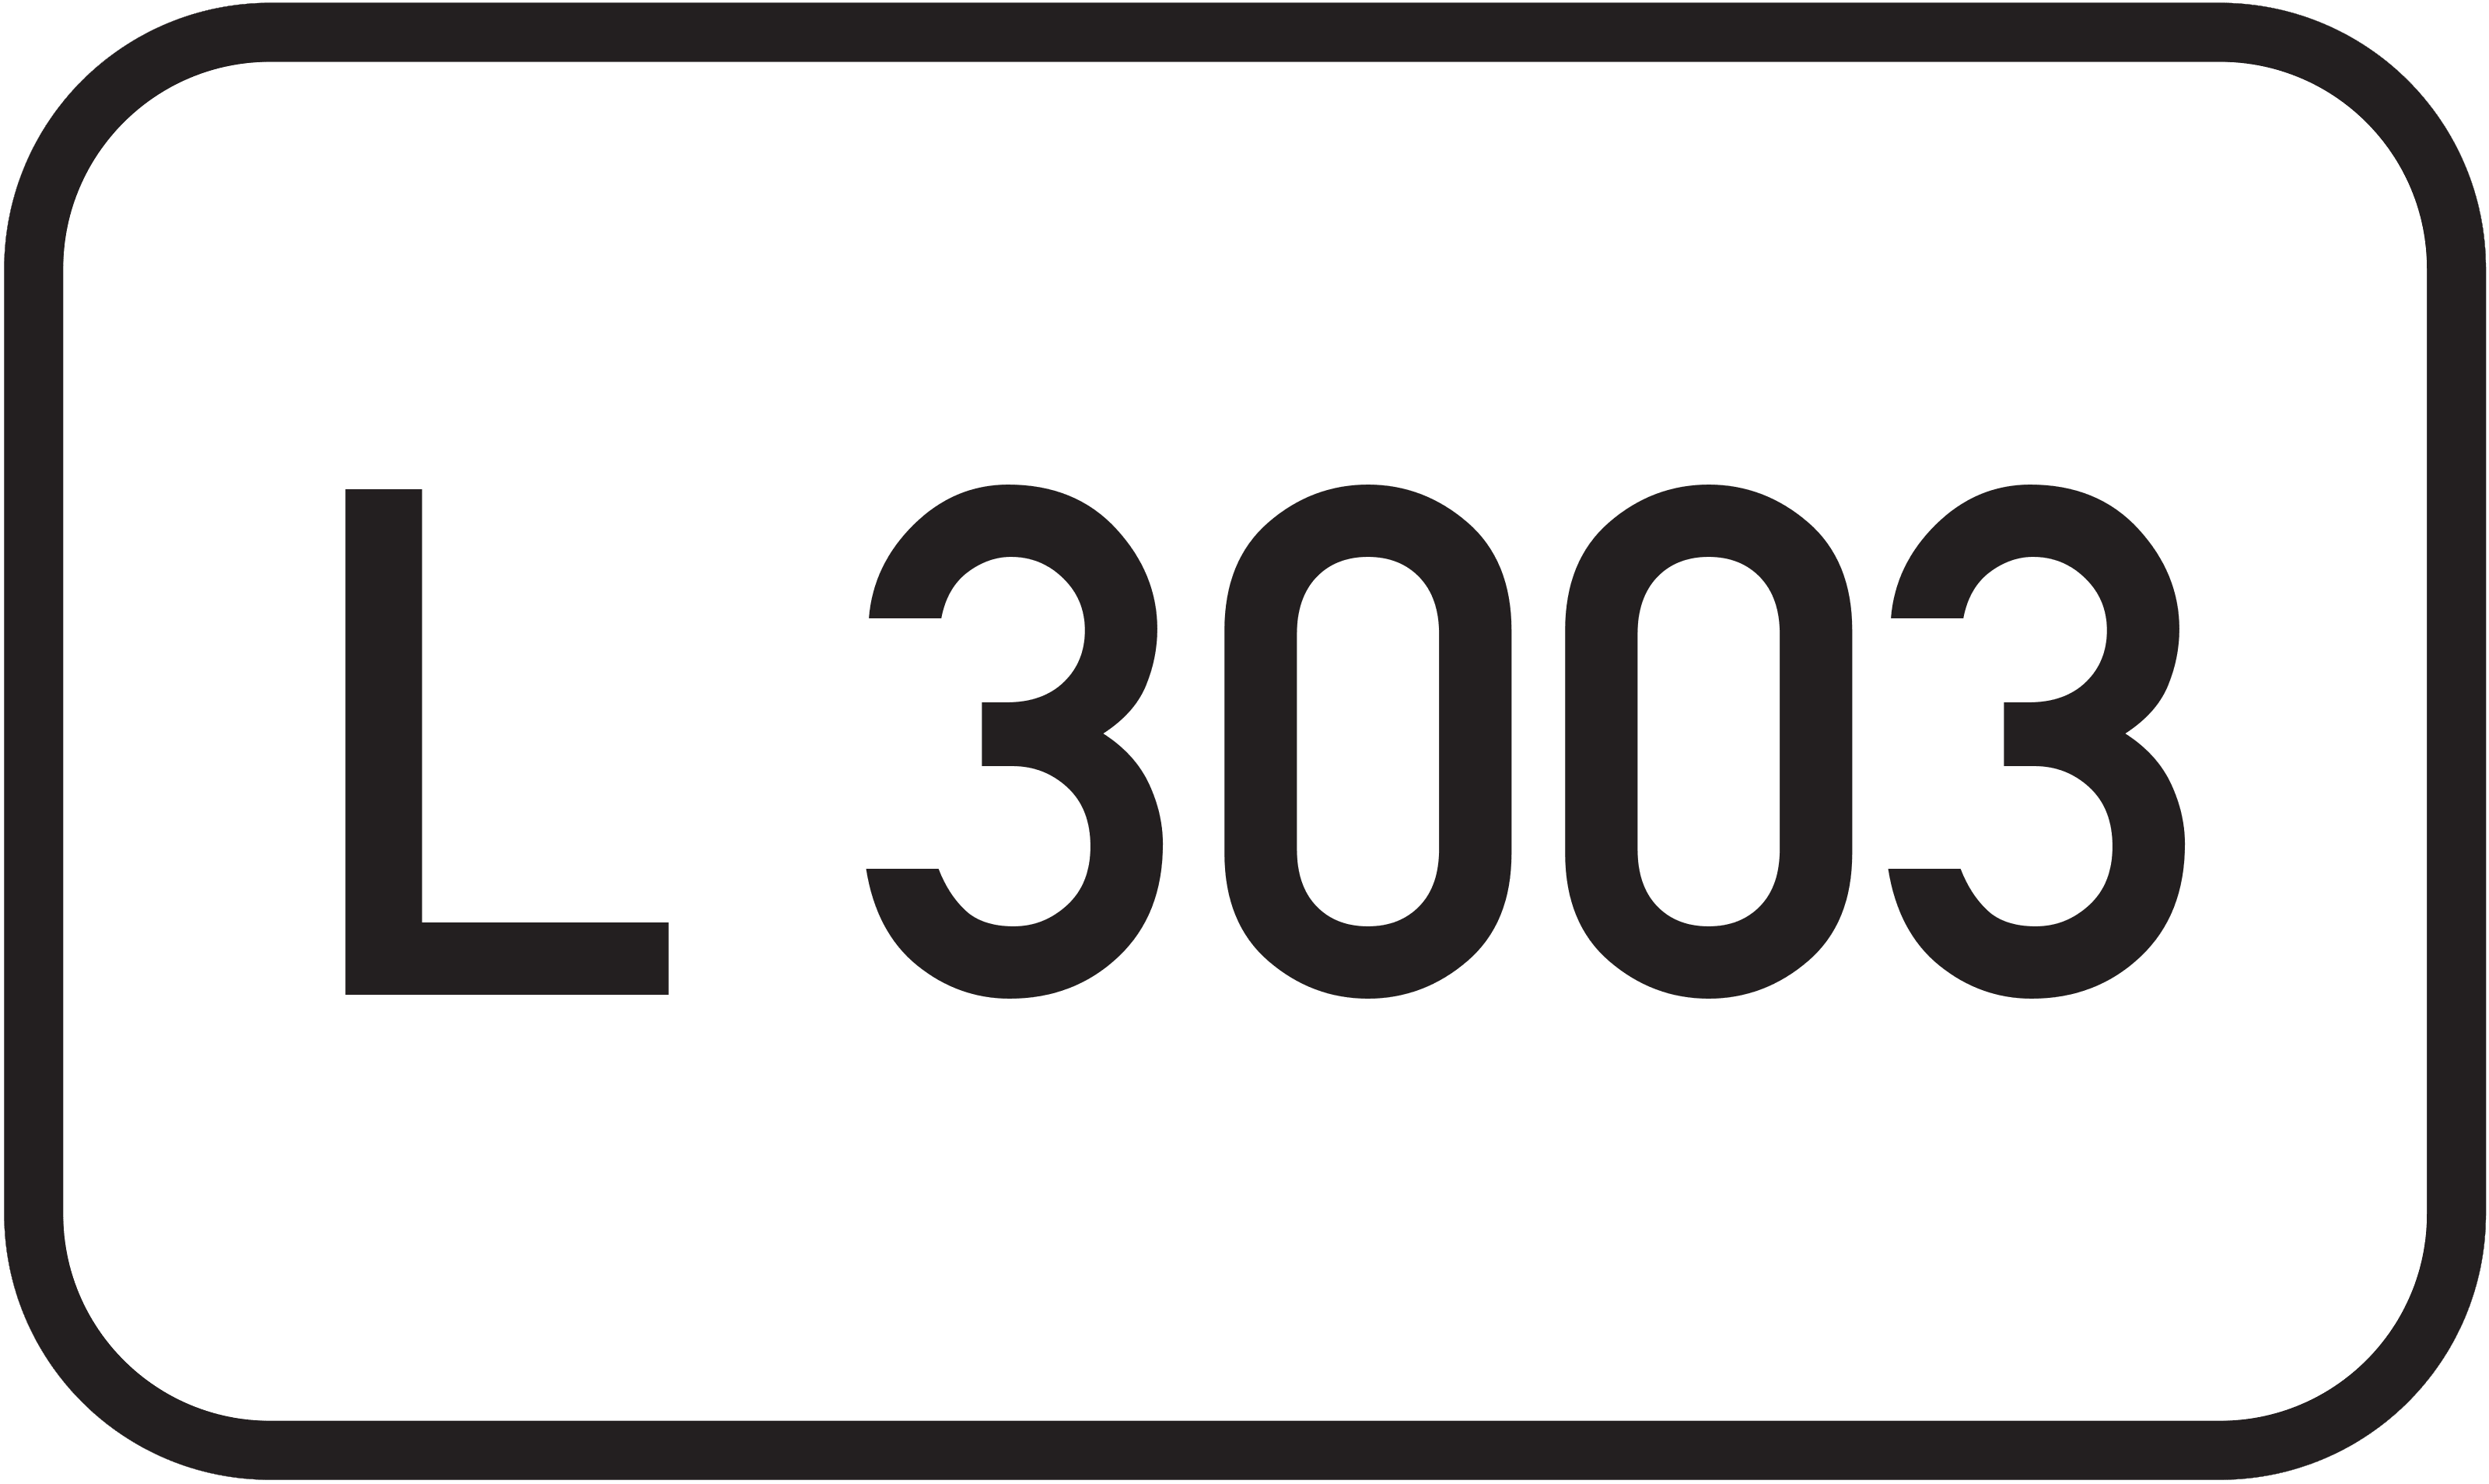 Landesstraße L 3003